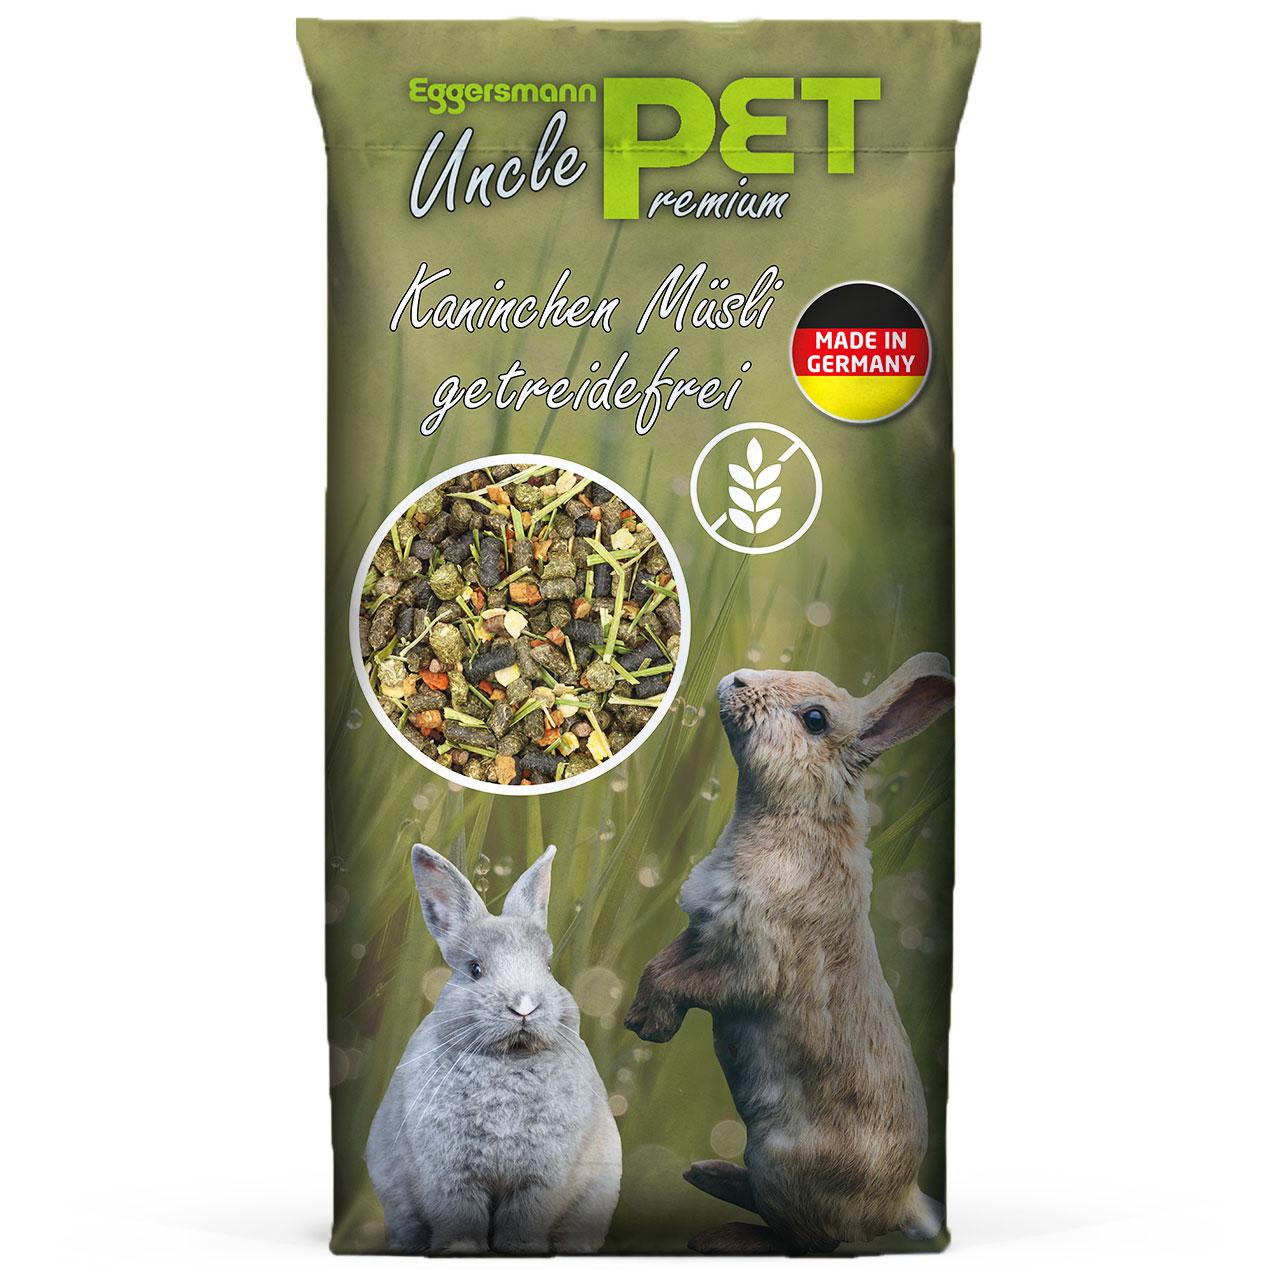 Eggersmann Uncle Pet Premium Kaninchen Müsli getreidefrei 15 kg